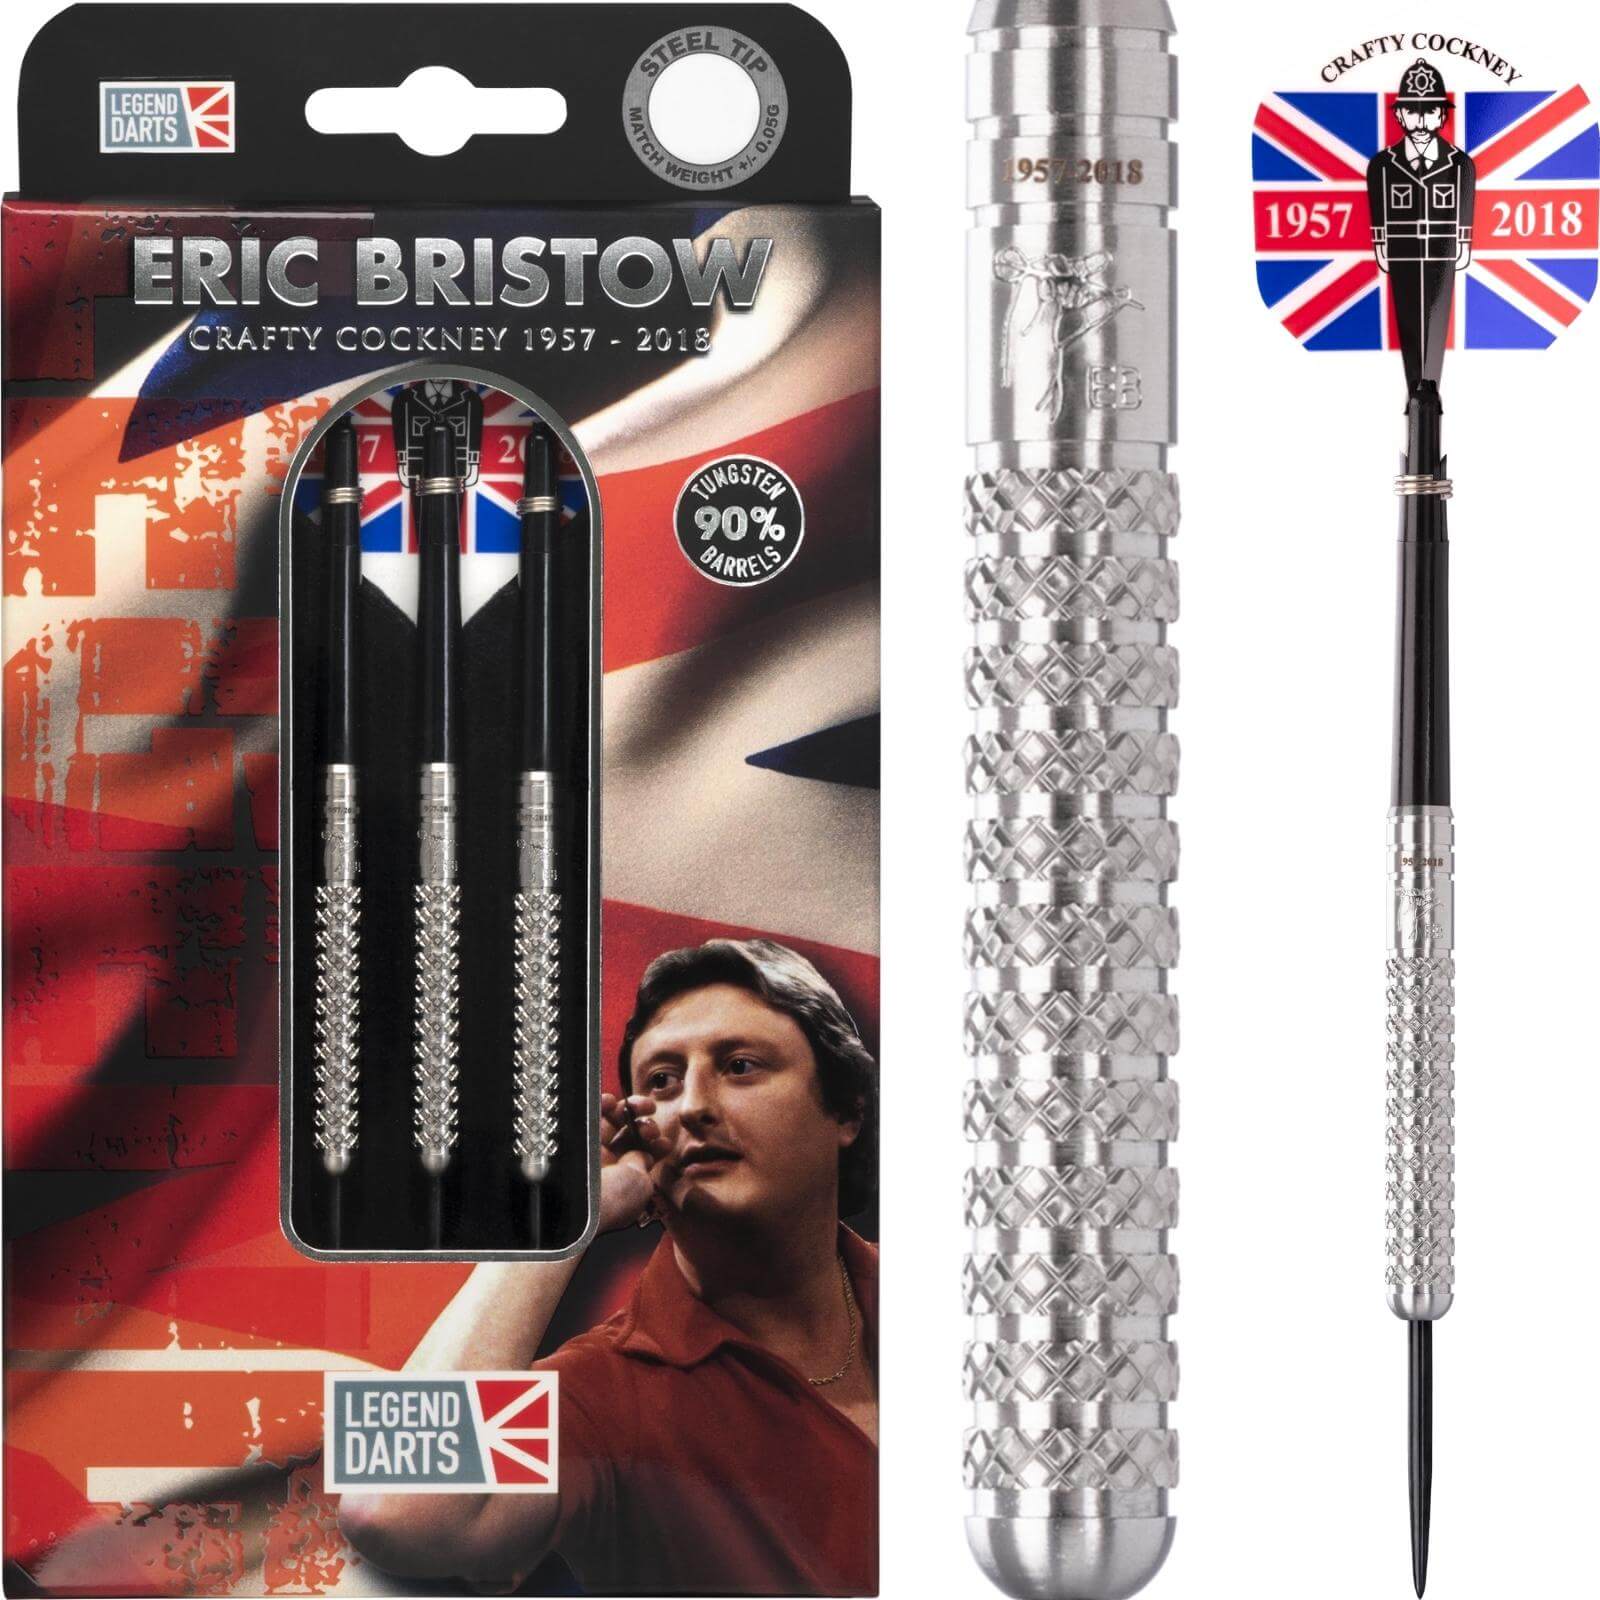 Darts - Legend Darts - Eric Bristow Natural Knurled Darts - Steel Tip - 90% Tungsten - 21g 23g 25g 